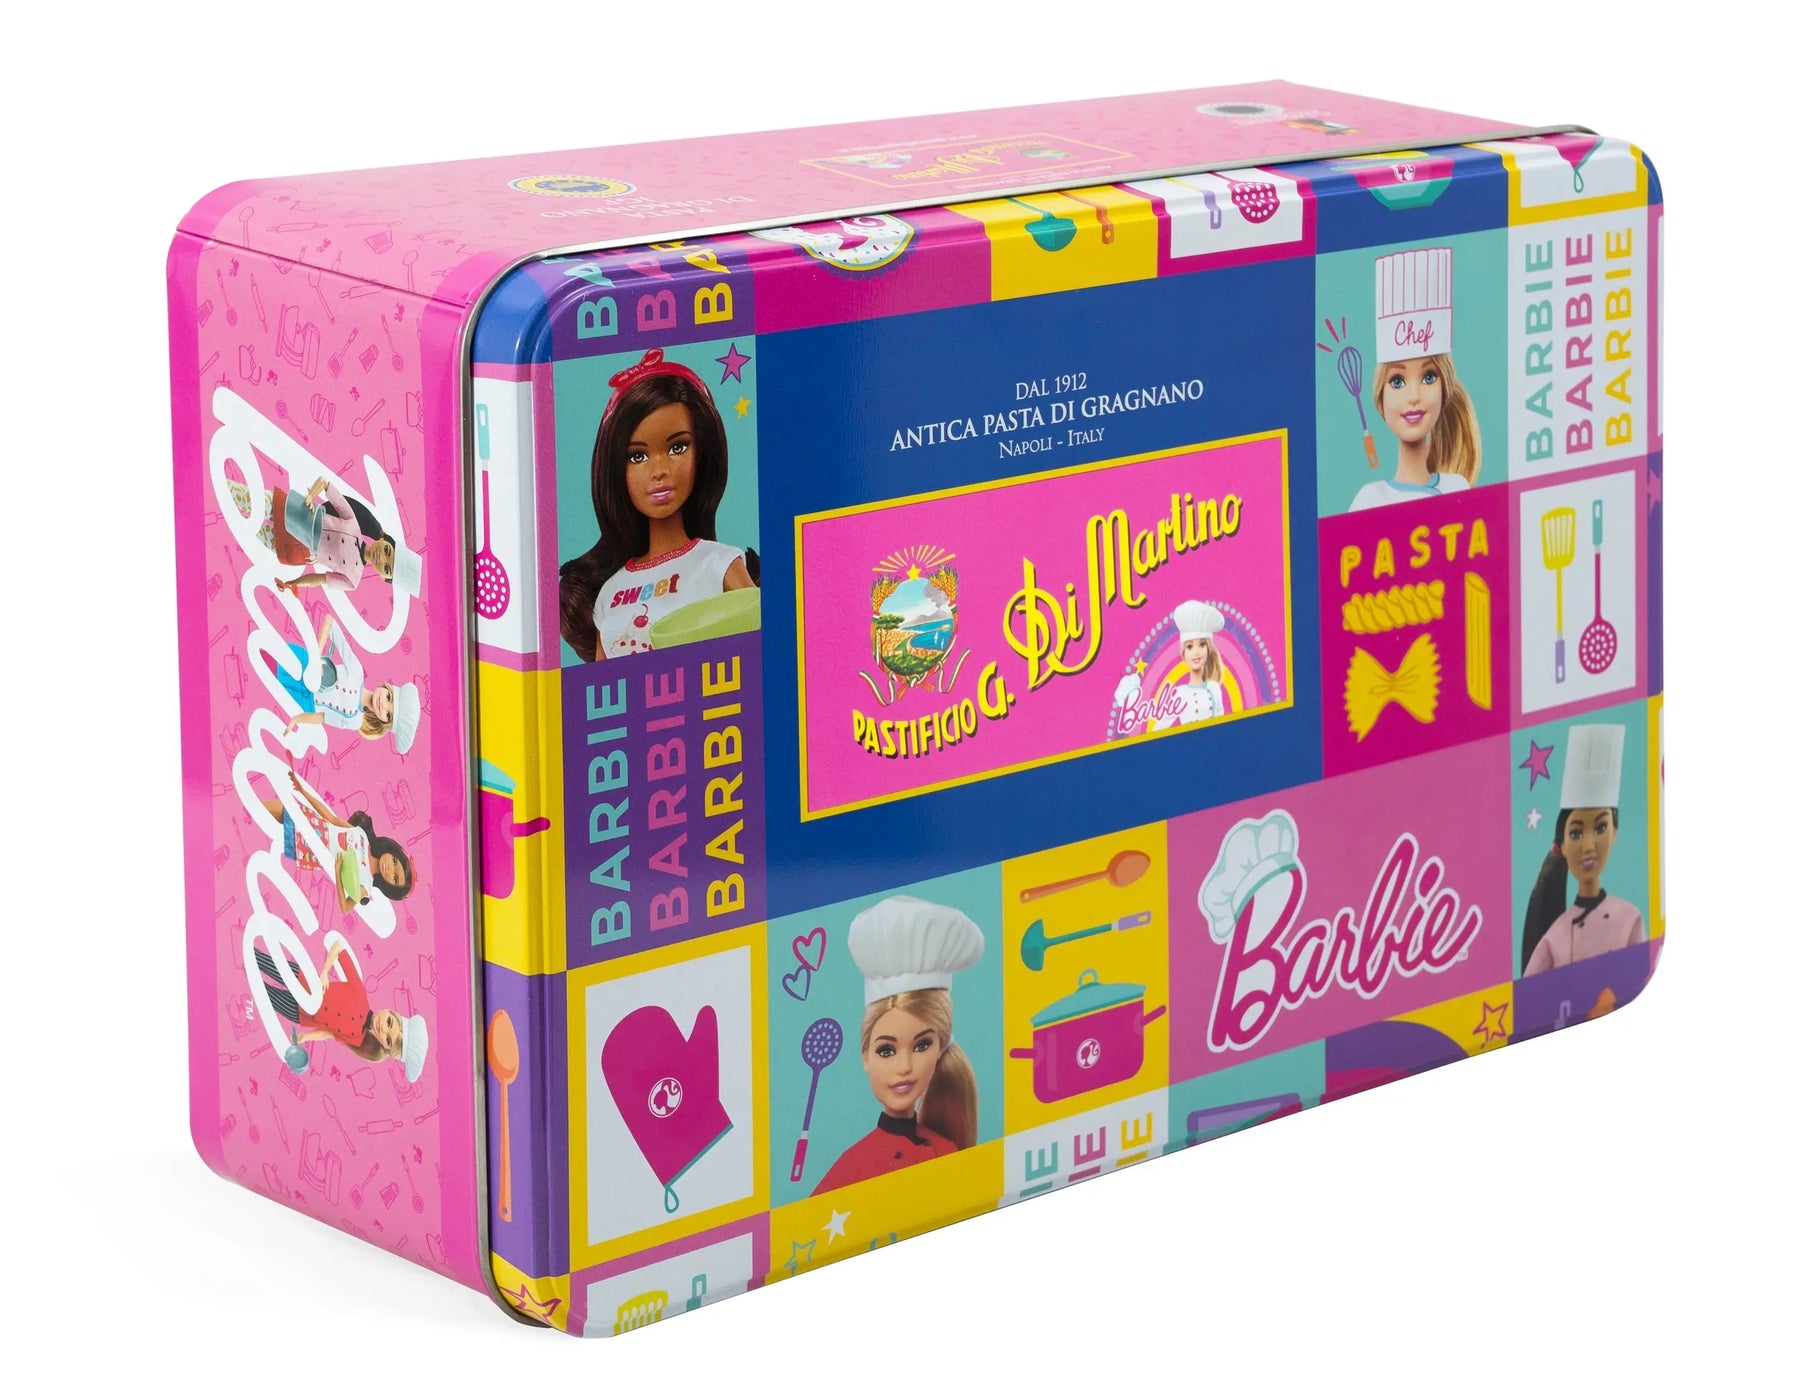 Season and Stir™ Pasta Gift Box - Barbie Edition by Pastificio di Martino